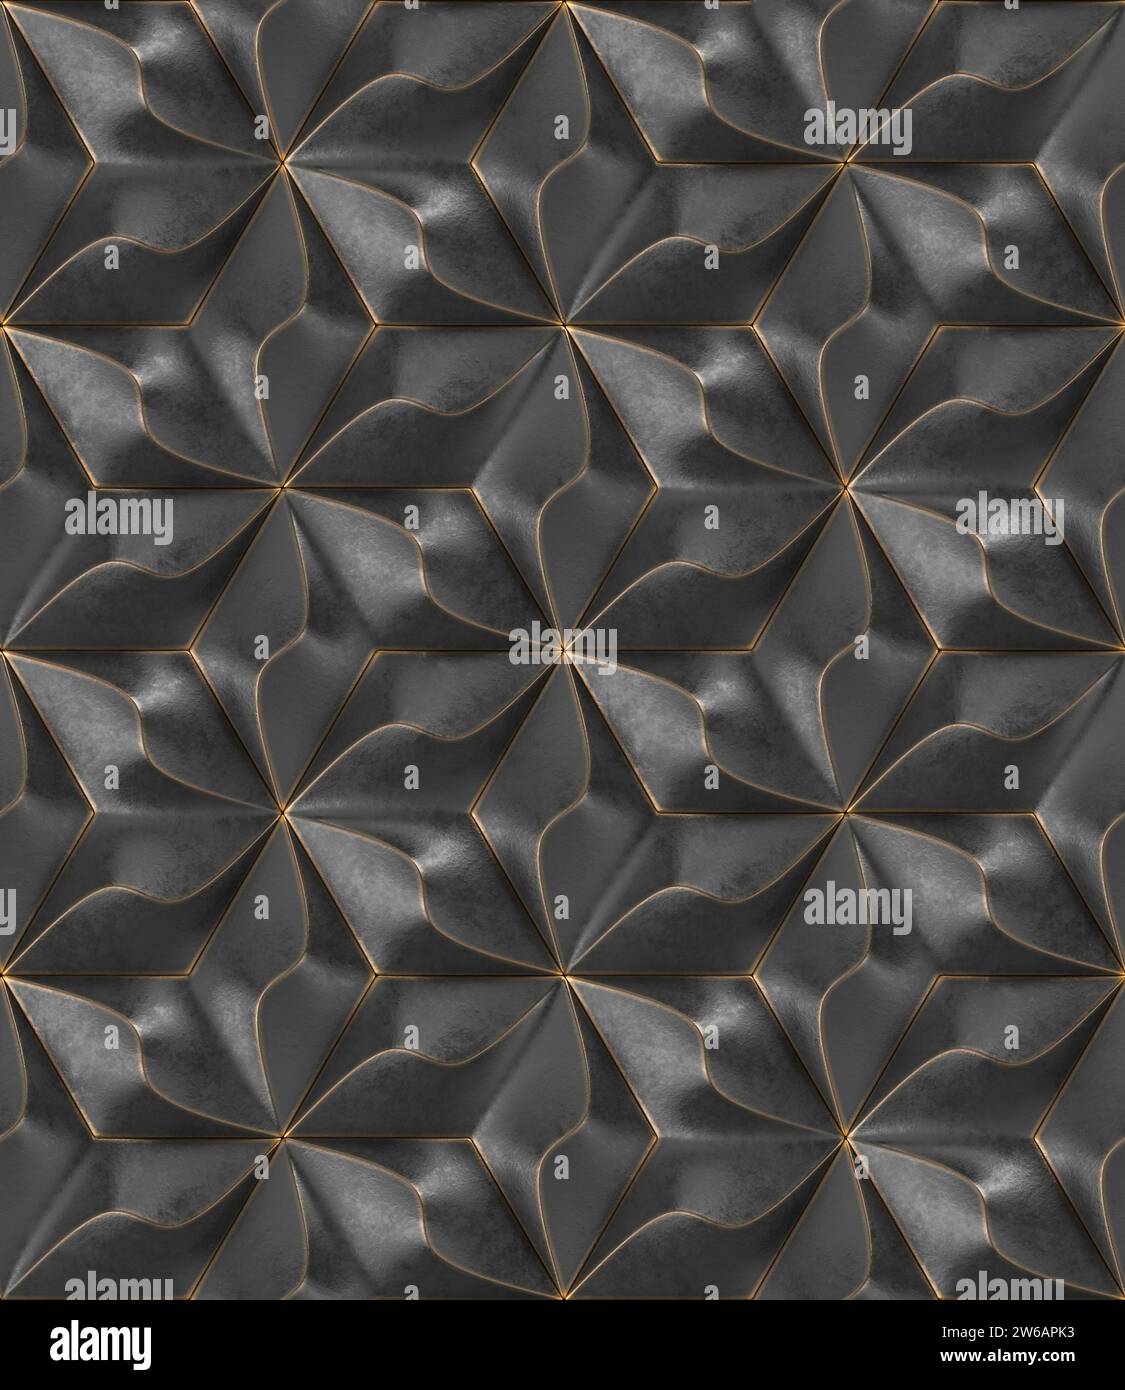 Dieses Bild zeigt ein geometrisches 3D-Muster mit einem sich wiederholenden Design in Grau- und Schwarztönen, das ein Gefühl von Tiefe und Textur vermittelt. Stockfoto